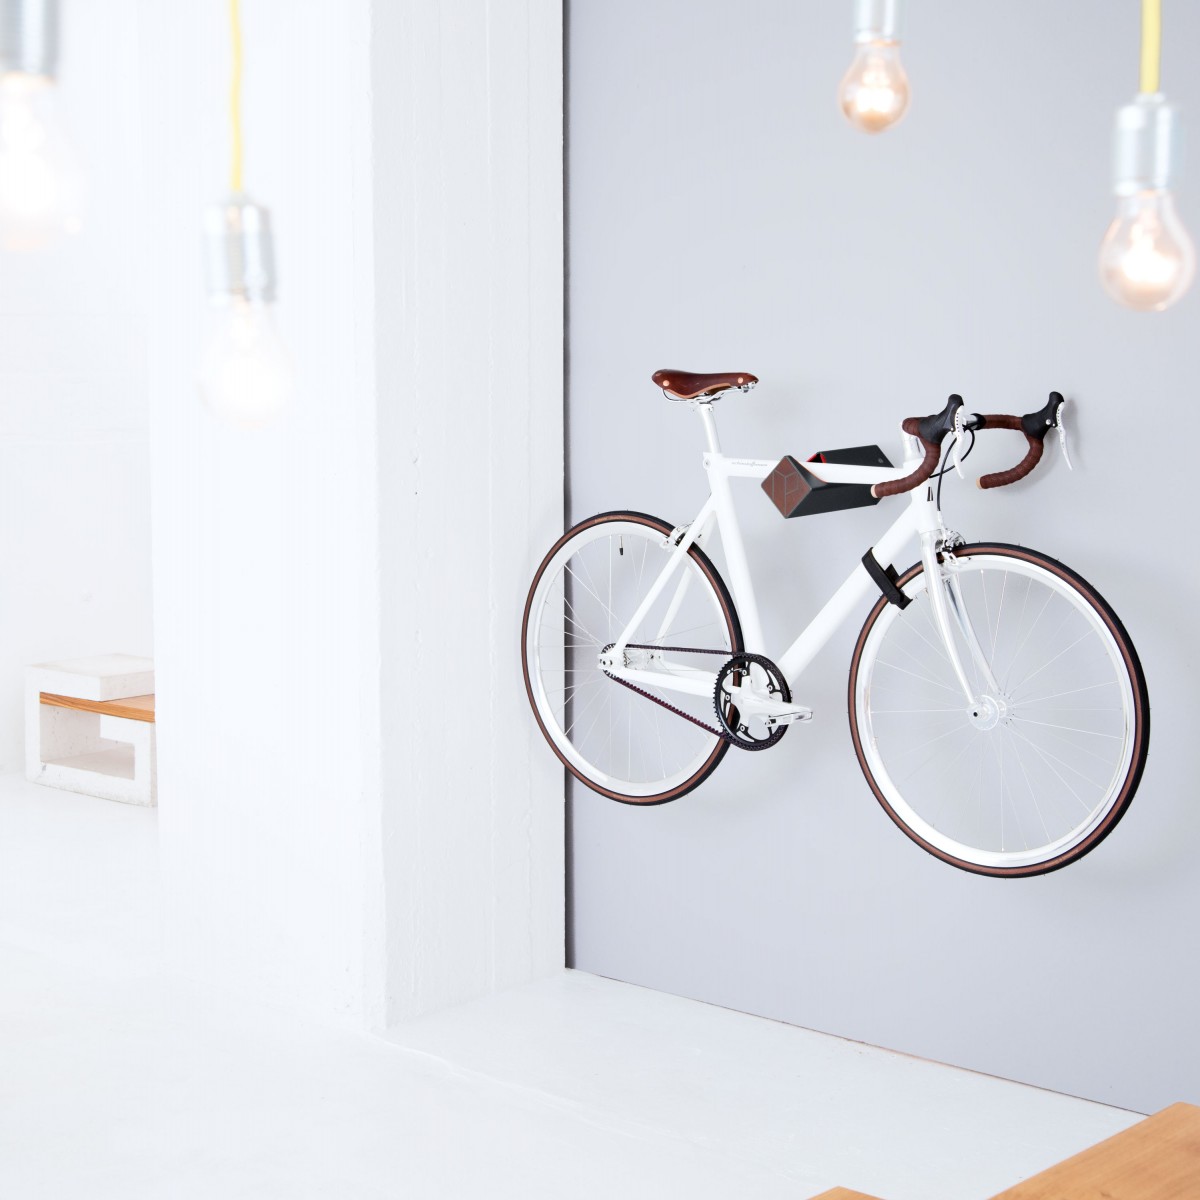 Stilvolle Design Fahrrad Wandhalterung | PARAX® D-RACK | für Rennrad, Hardtail, Cityrad & Tourenrad | Schwarz-Rot mit Kebony Holz